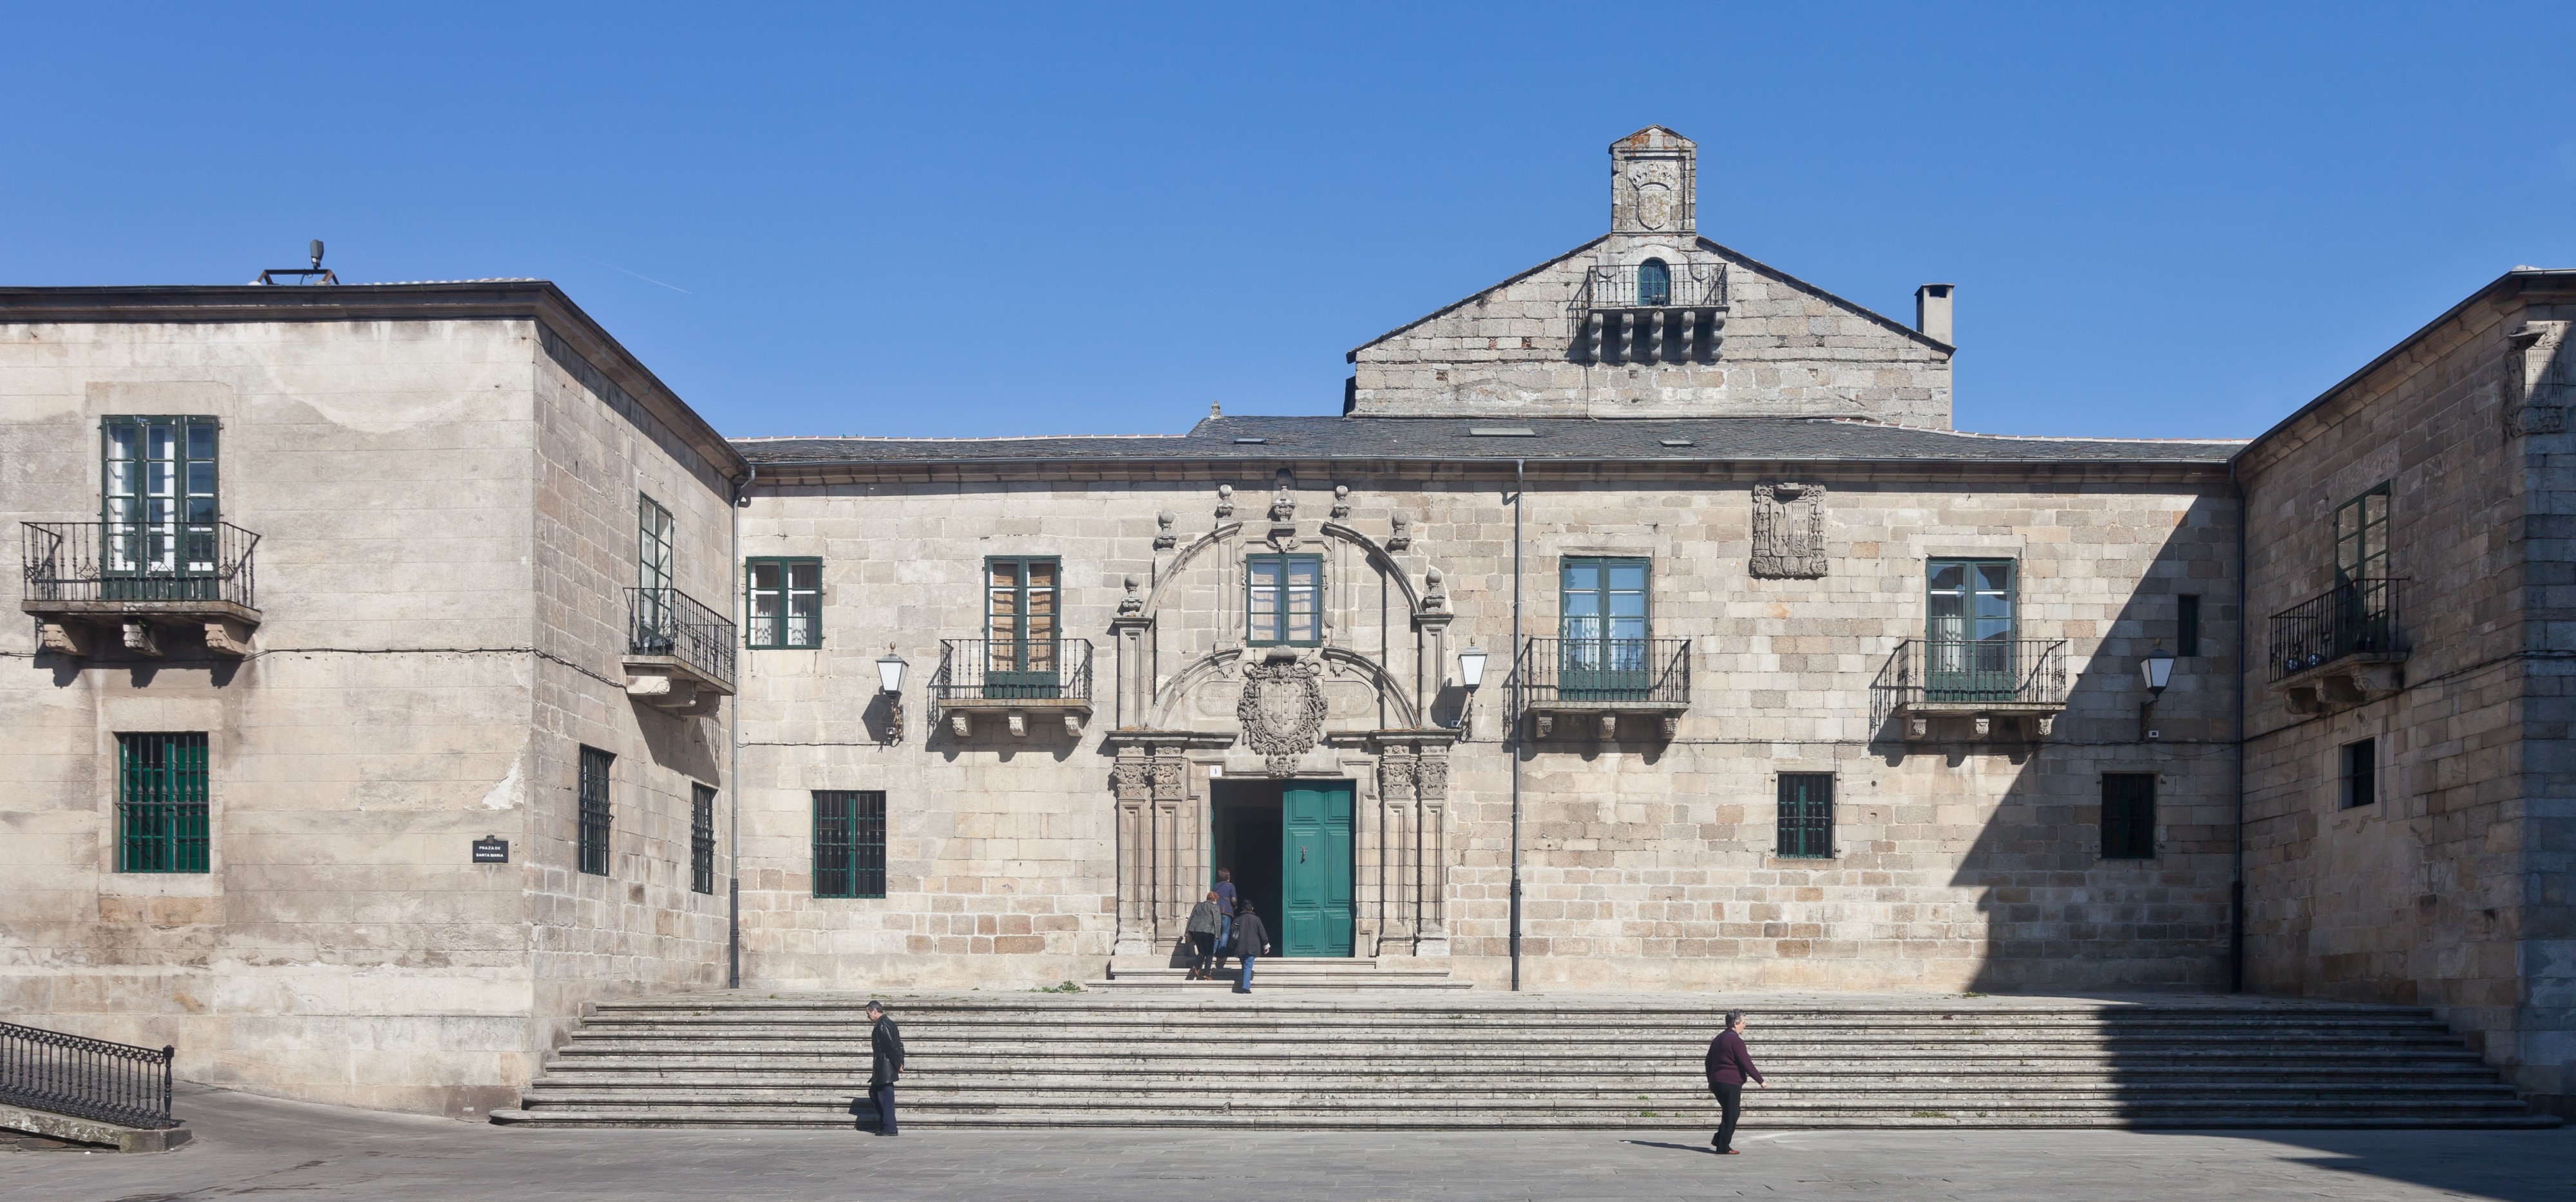 Museo provincial de Lugo - Galicia - Spain